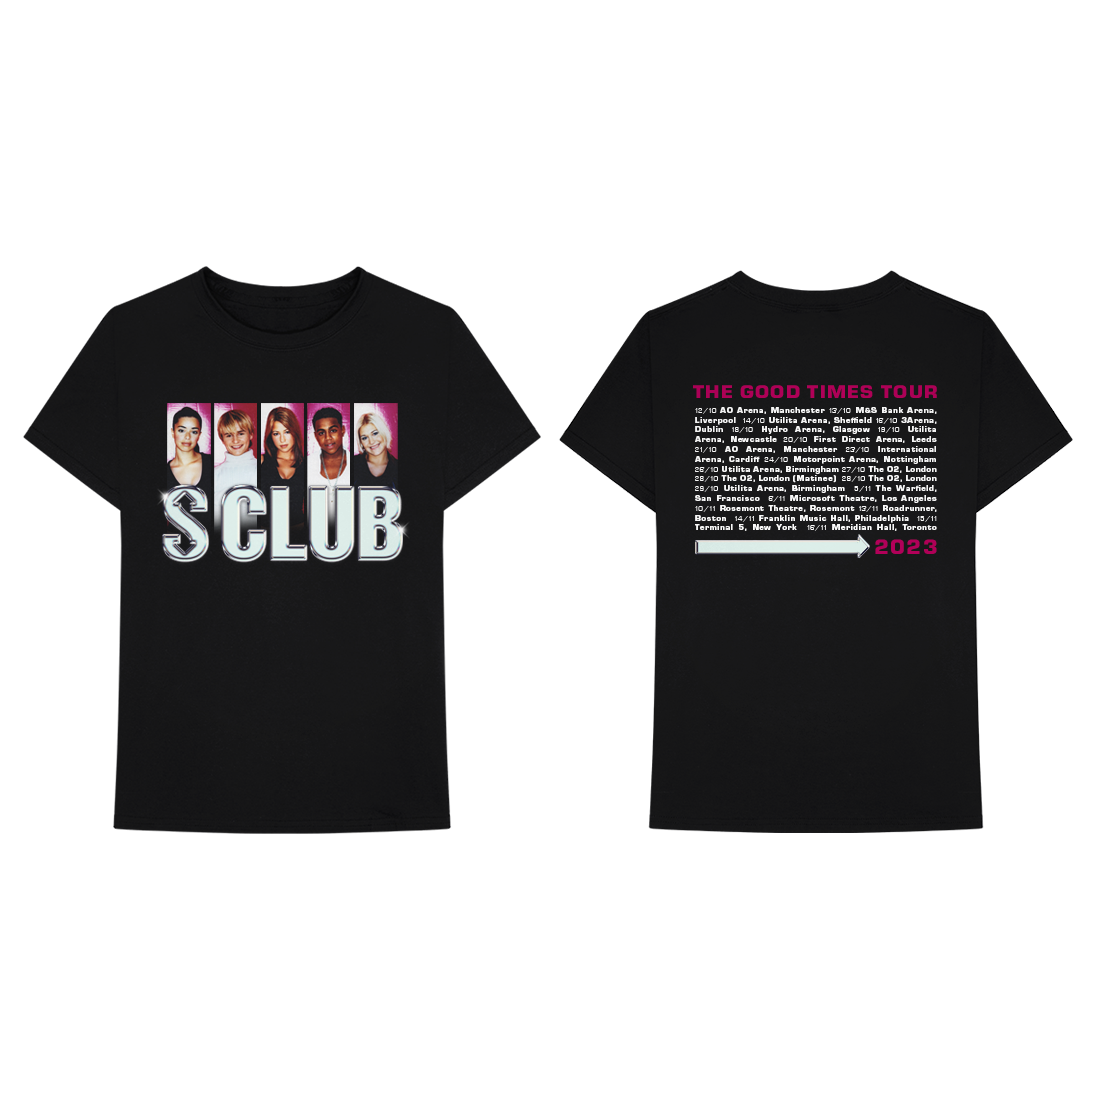 S Club: Picture Disc Vinyl LP, Tour T-Shirt & Programme